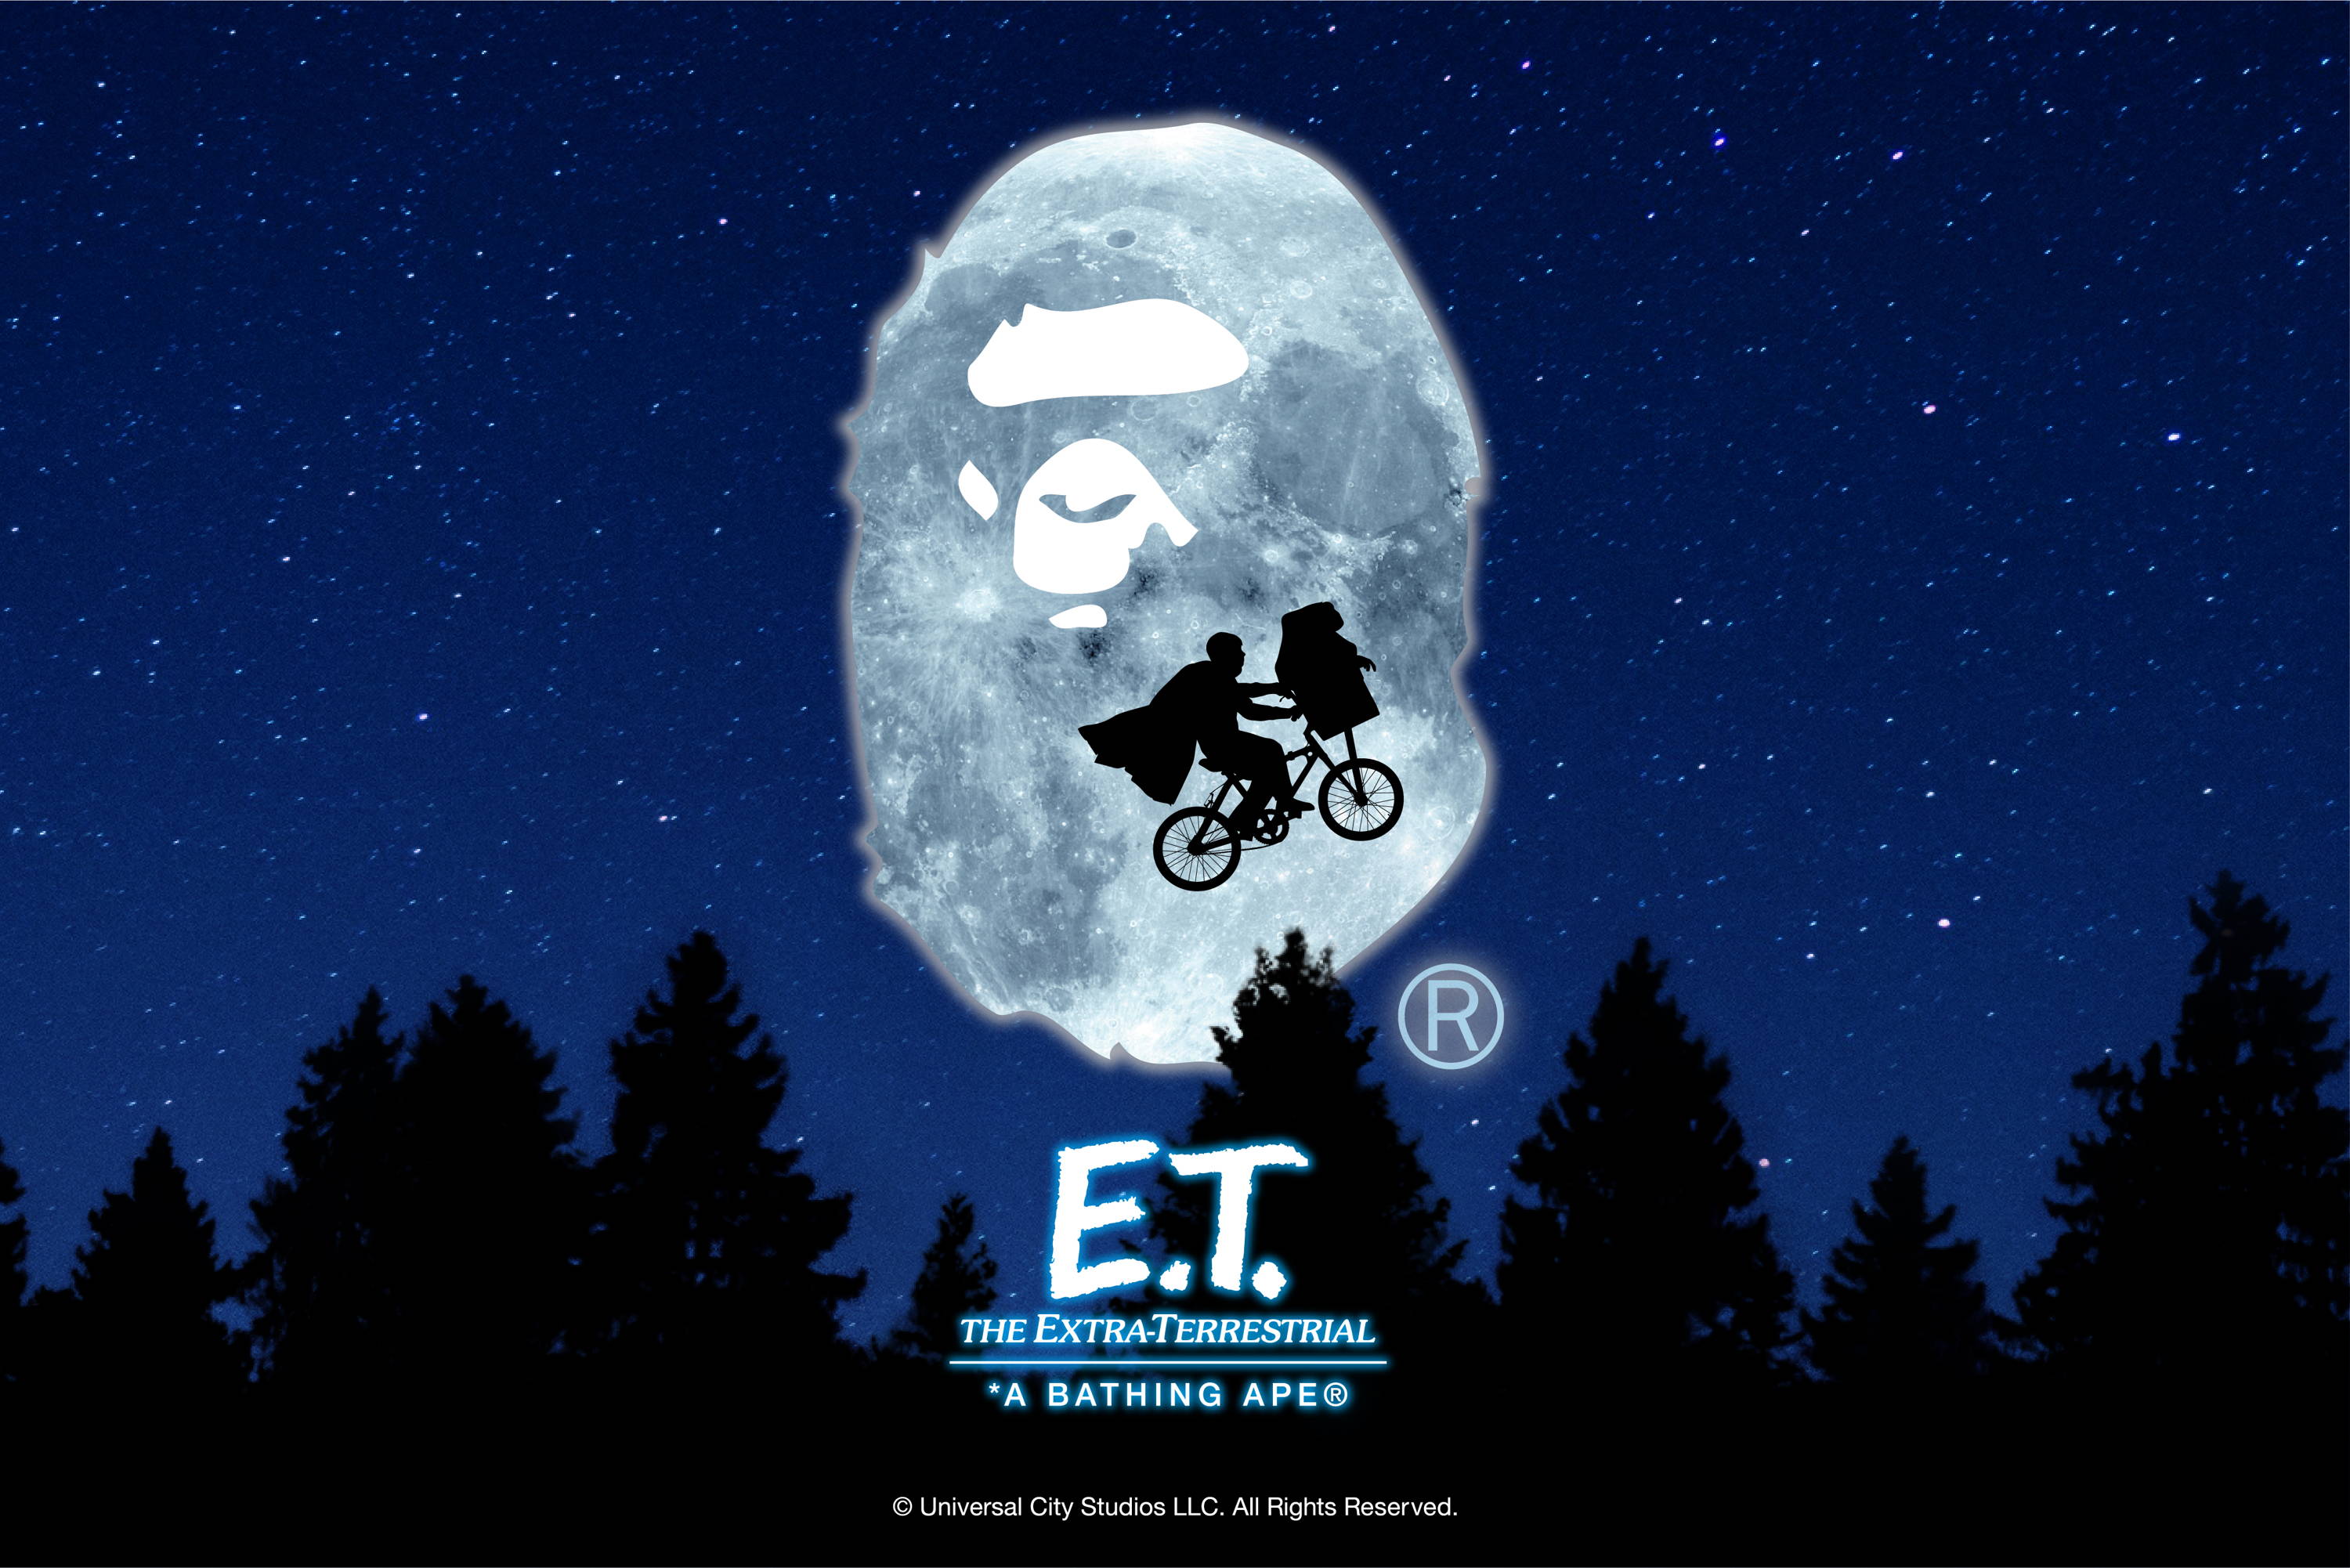 E.T. | bape.com